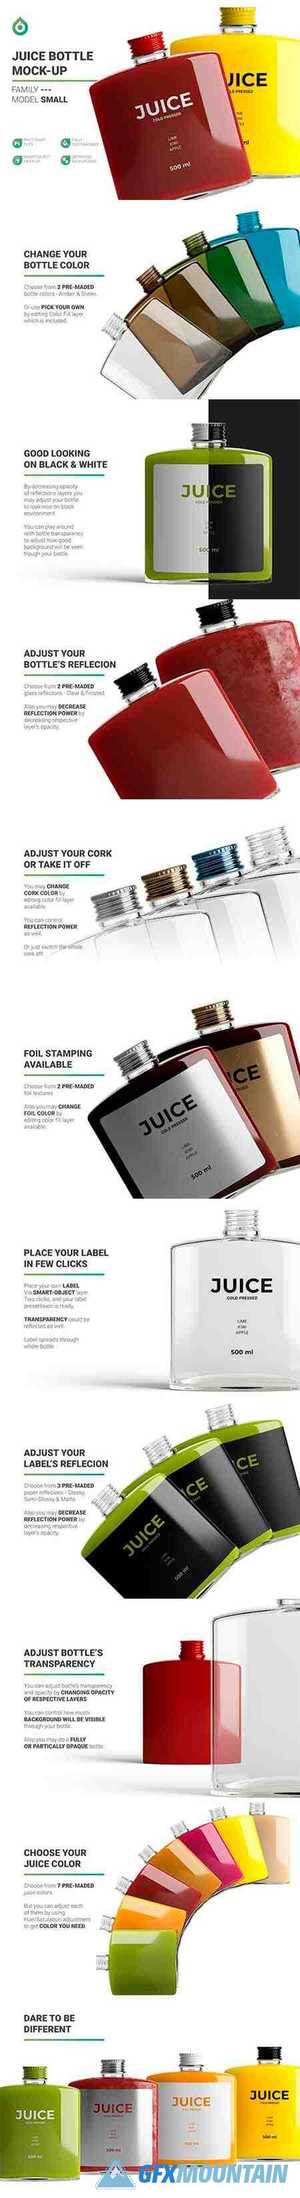 Juice Bottle Mockup 5323563